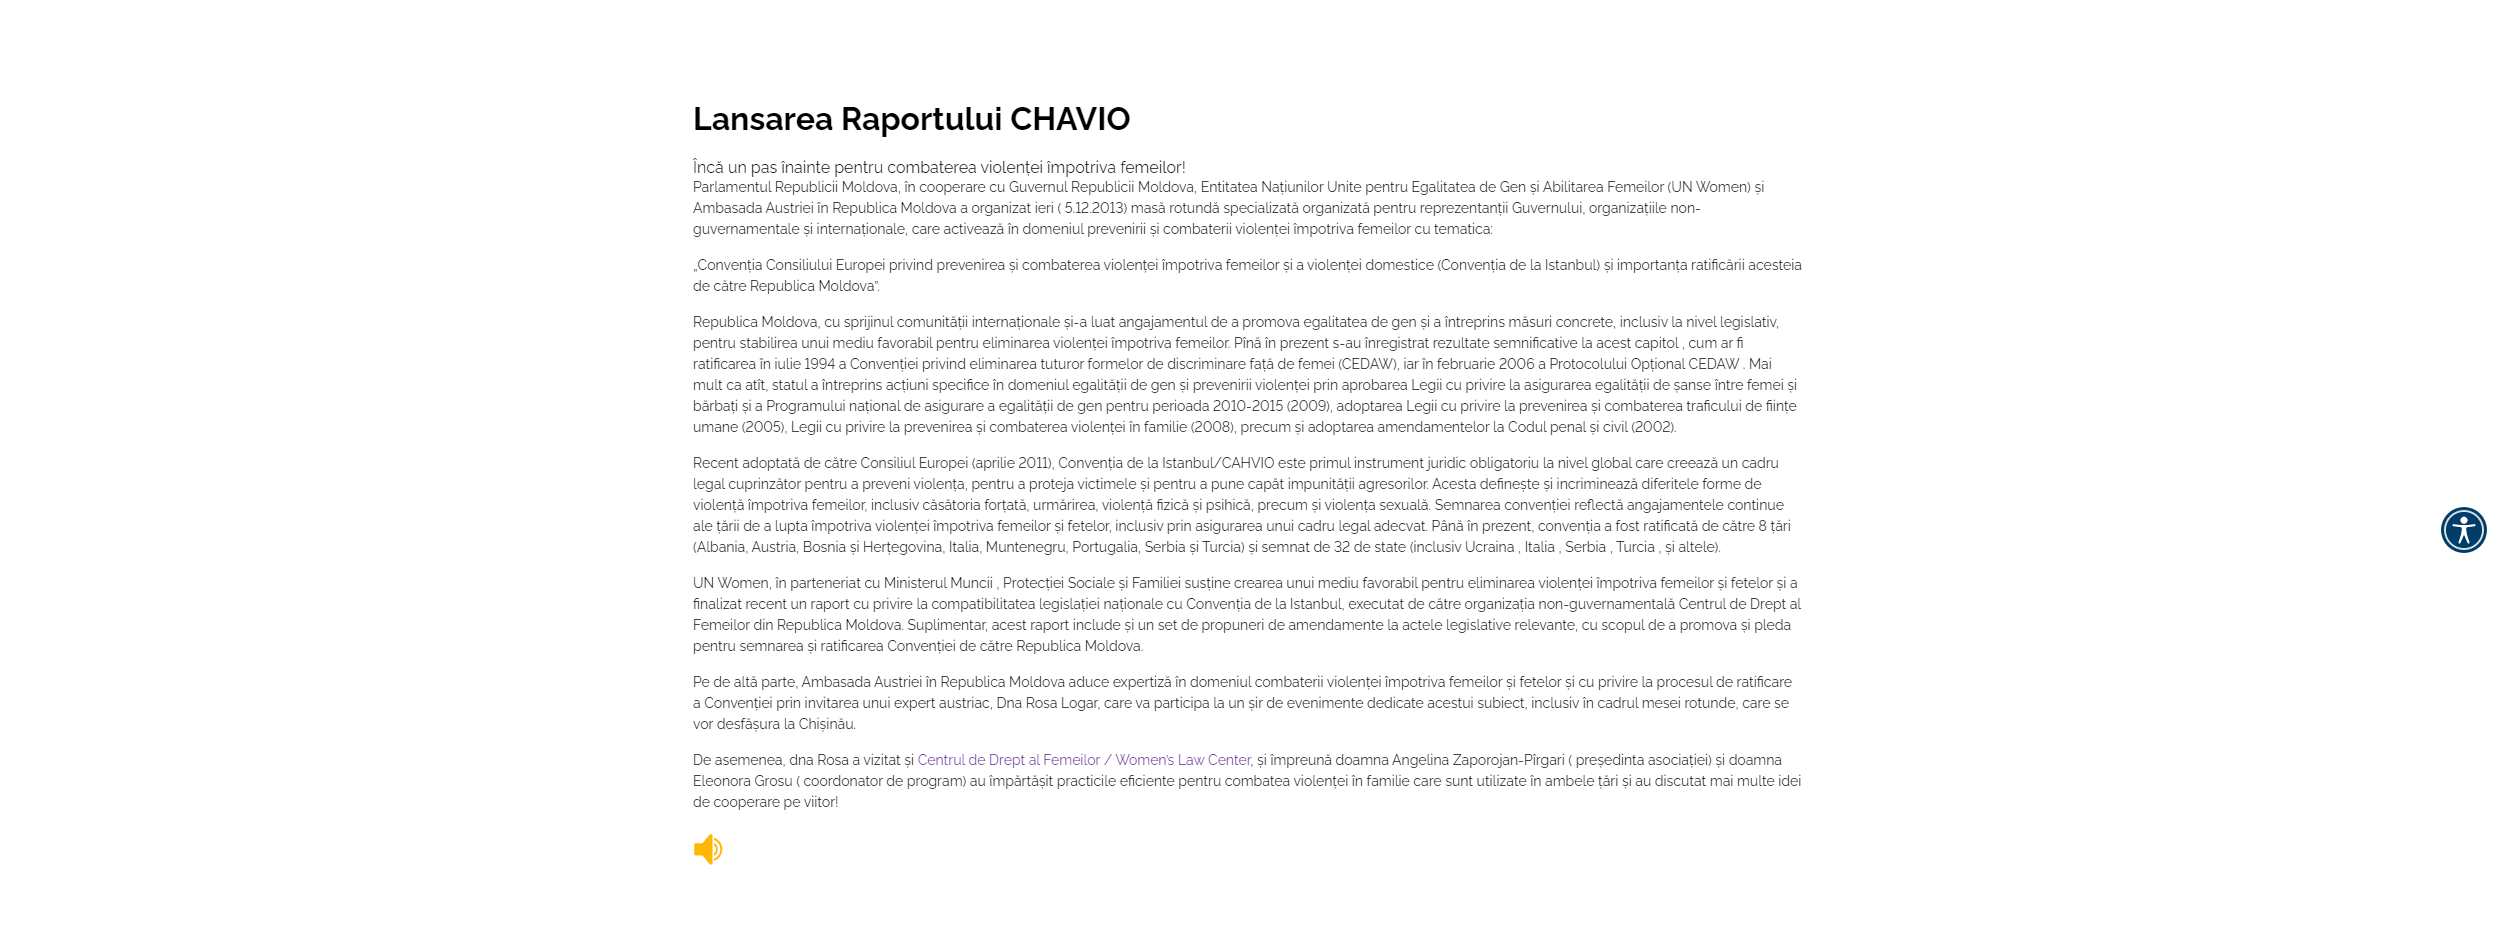 Lansarea Raportului CHAVIO